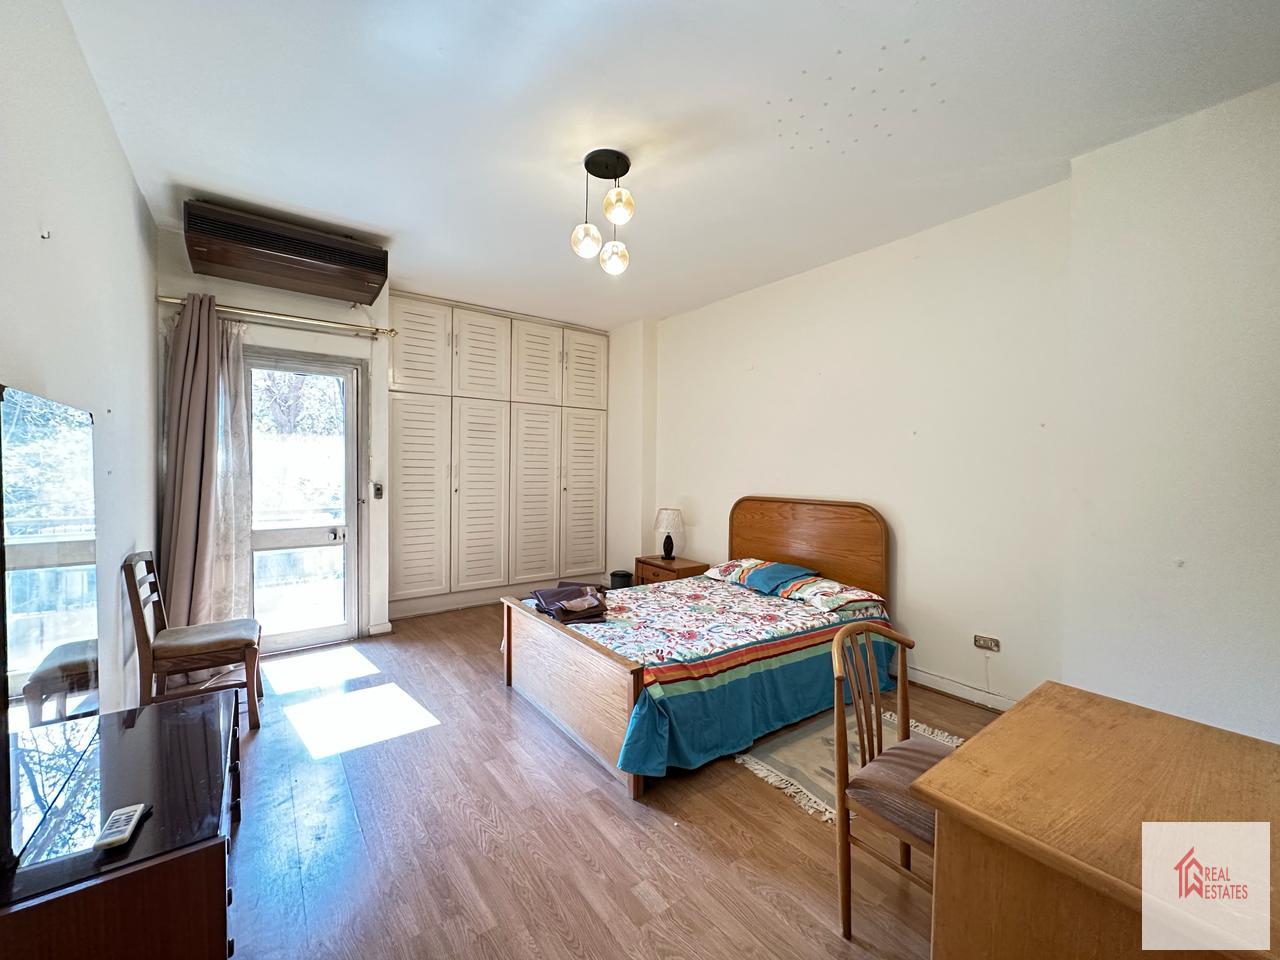 Сдается квартира в Маади Сараят, Каир, Египет, 3 спальни, 2 ванные комнаты, 1 мастер, меблированный балкон.